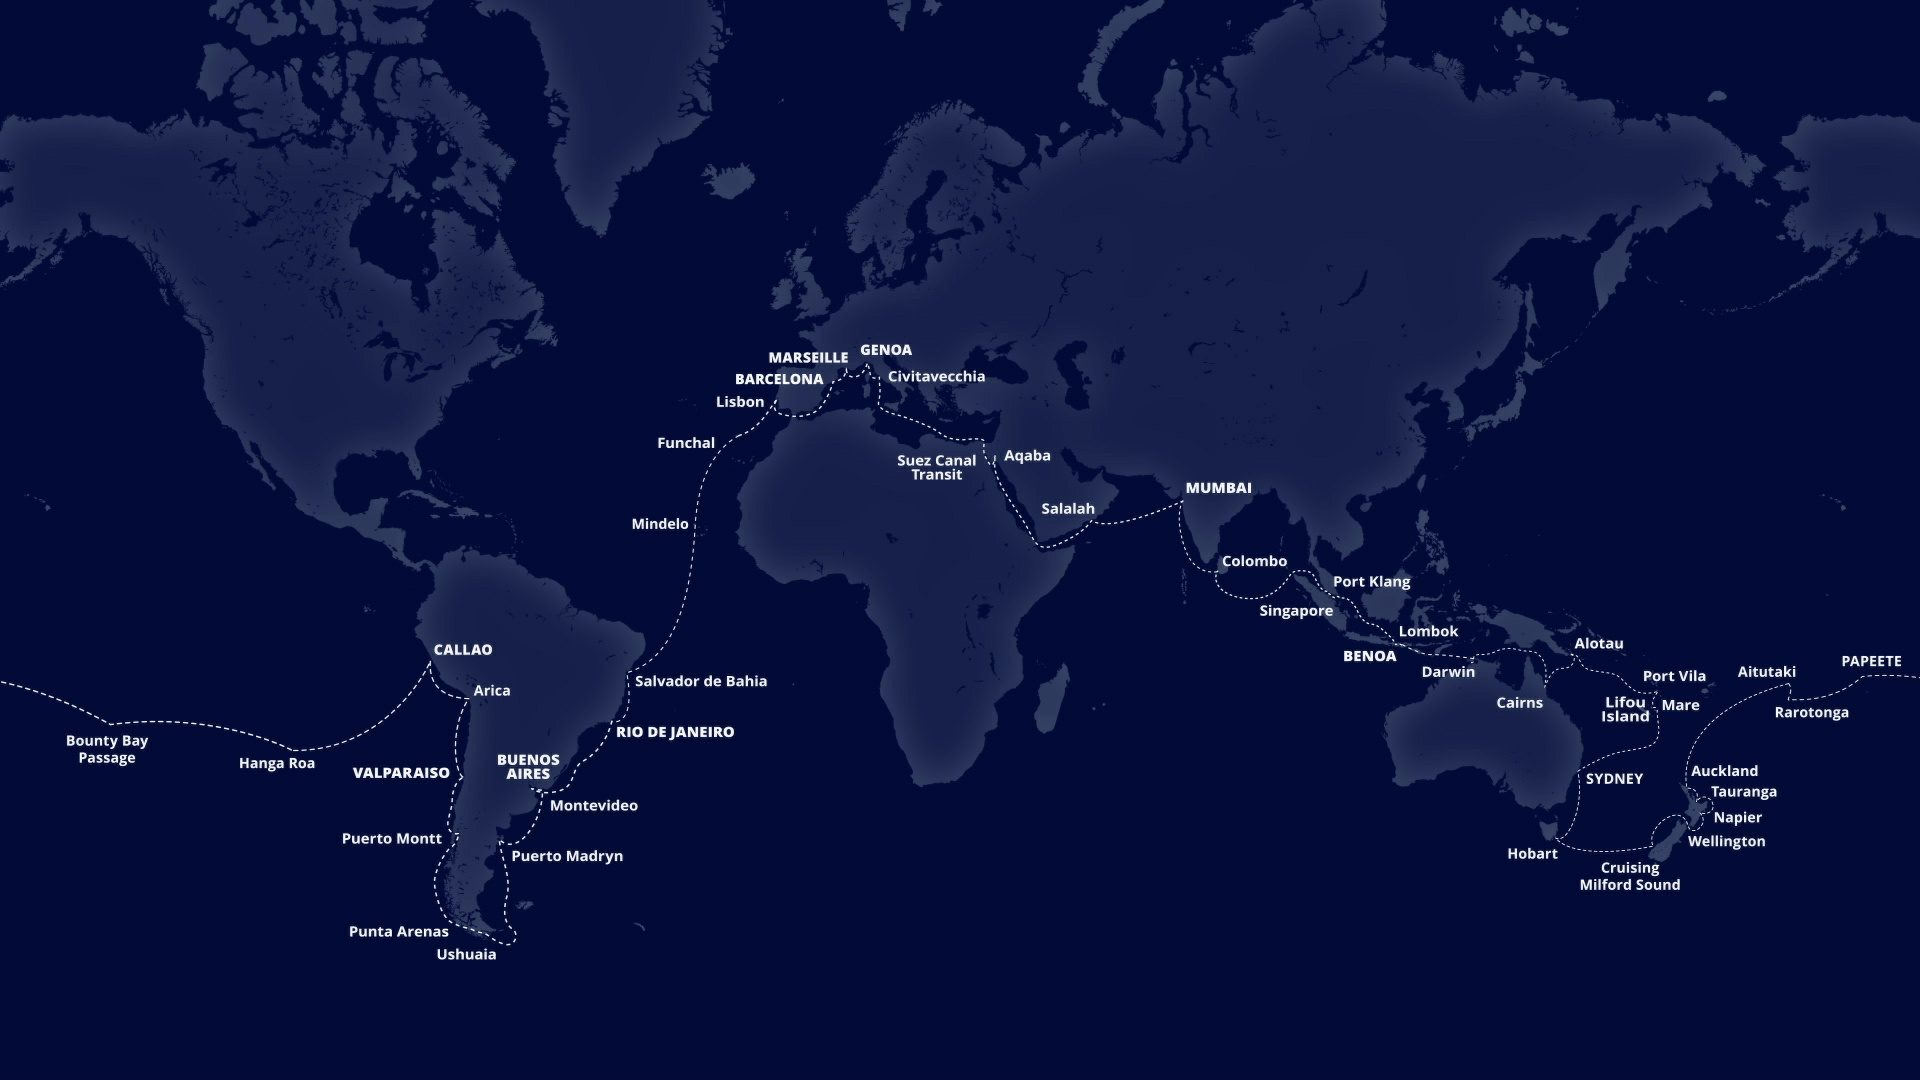 L'itinerario della MSC World Cruise 2022